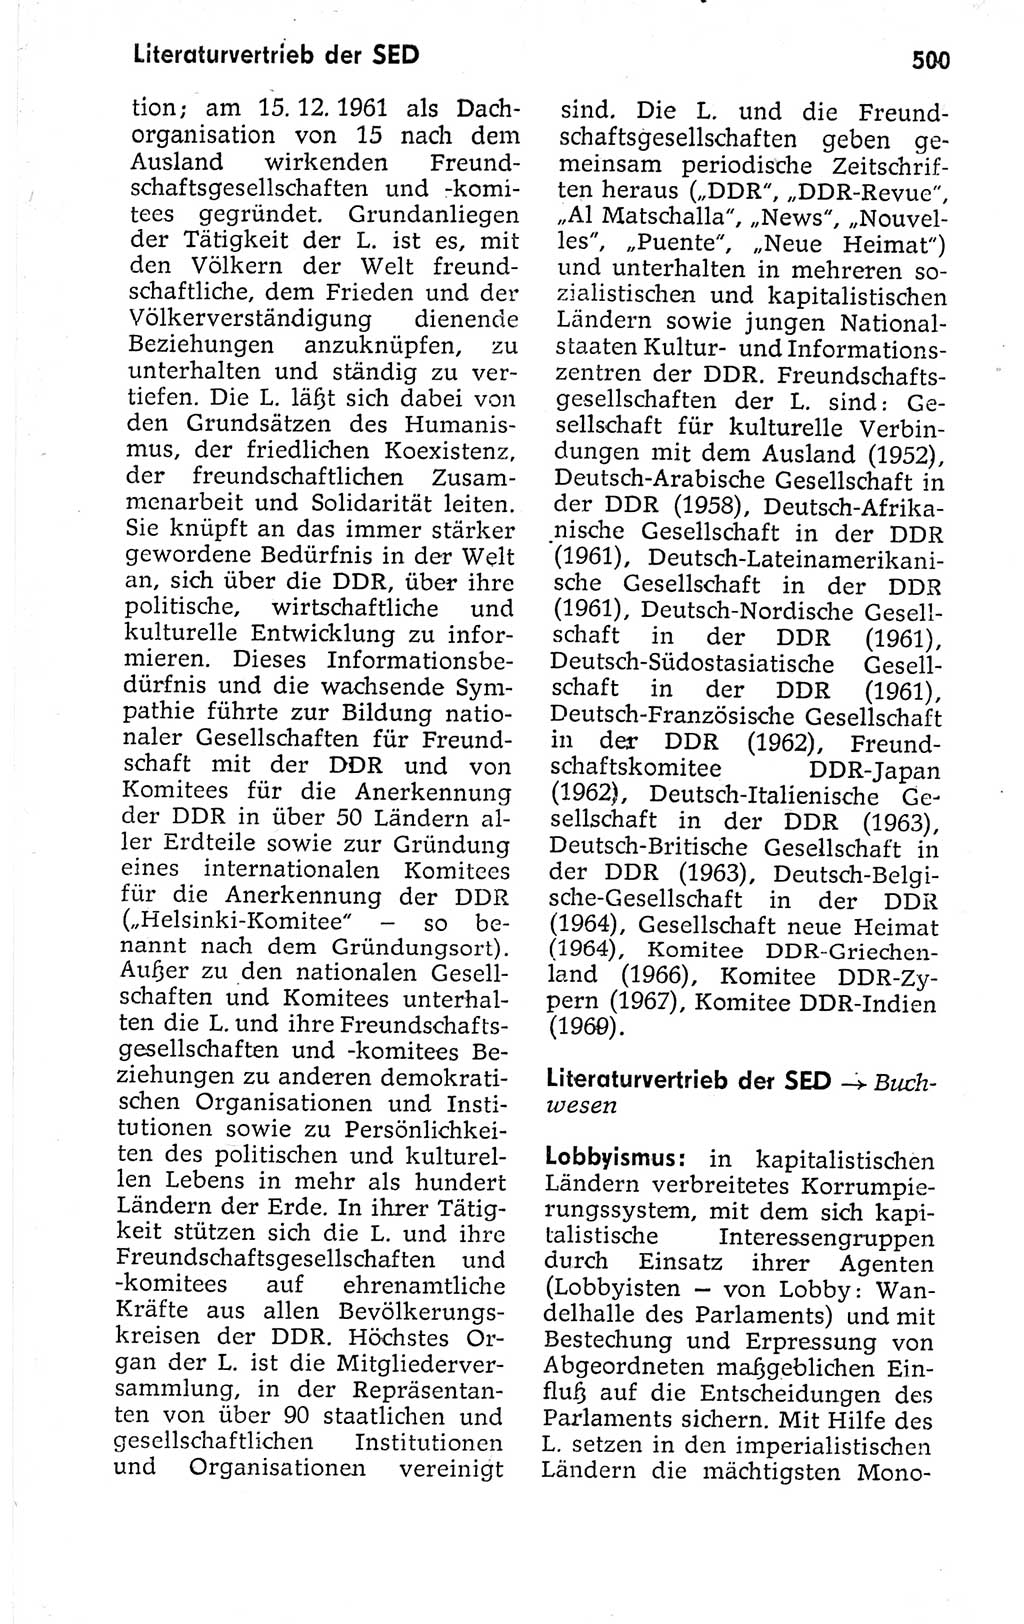 Kleines politisches Wörterbuch [Deutsche Demokratische Republik (DDR)] 1973, Seite 500 (Kl. pol. Wb. DDR 1973, S. 500)